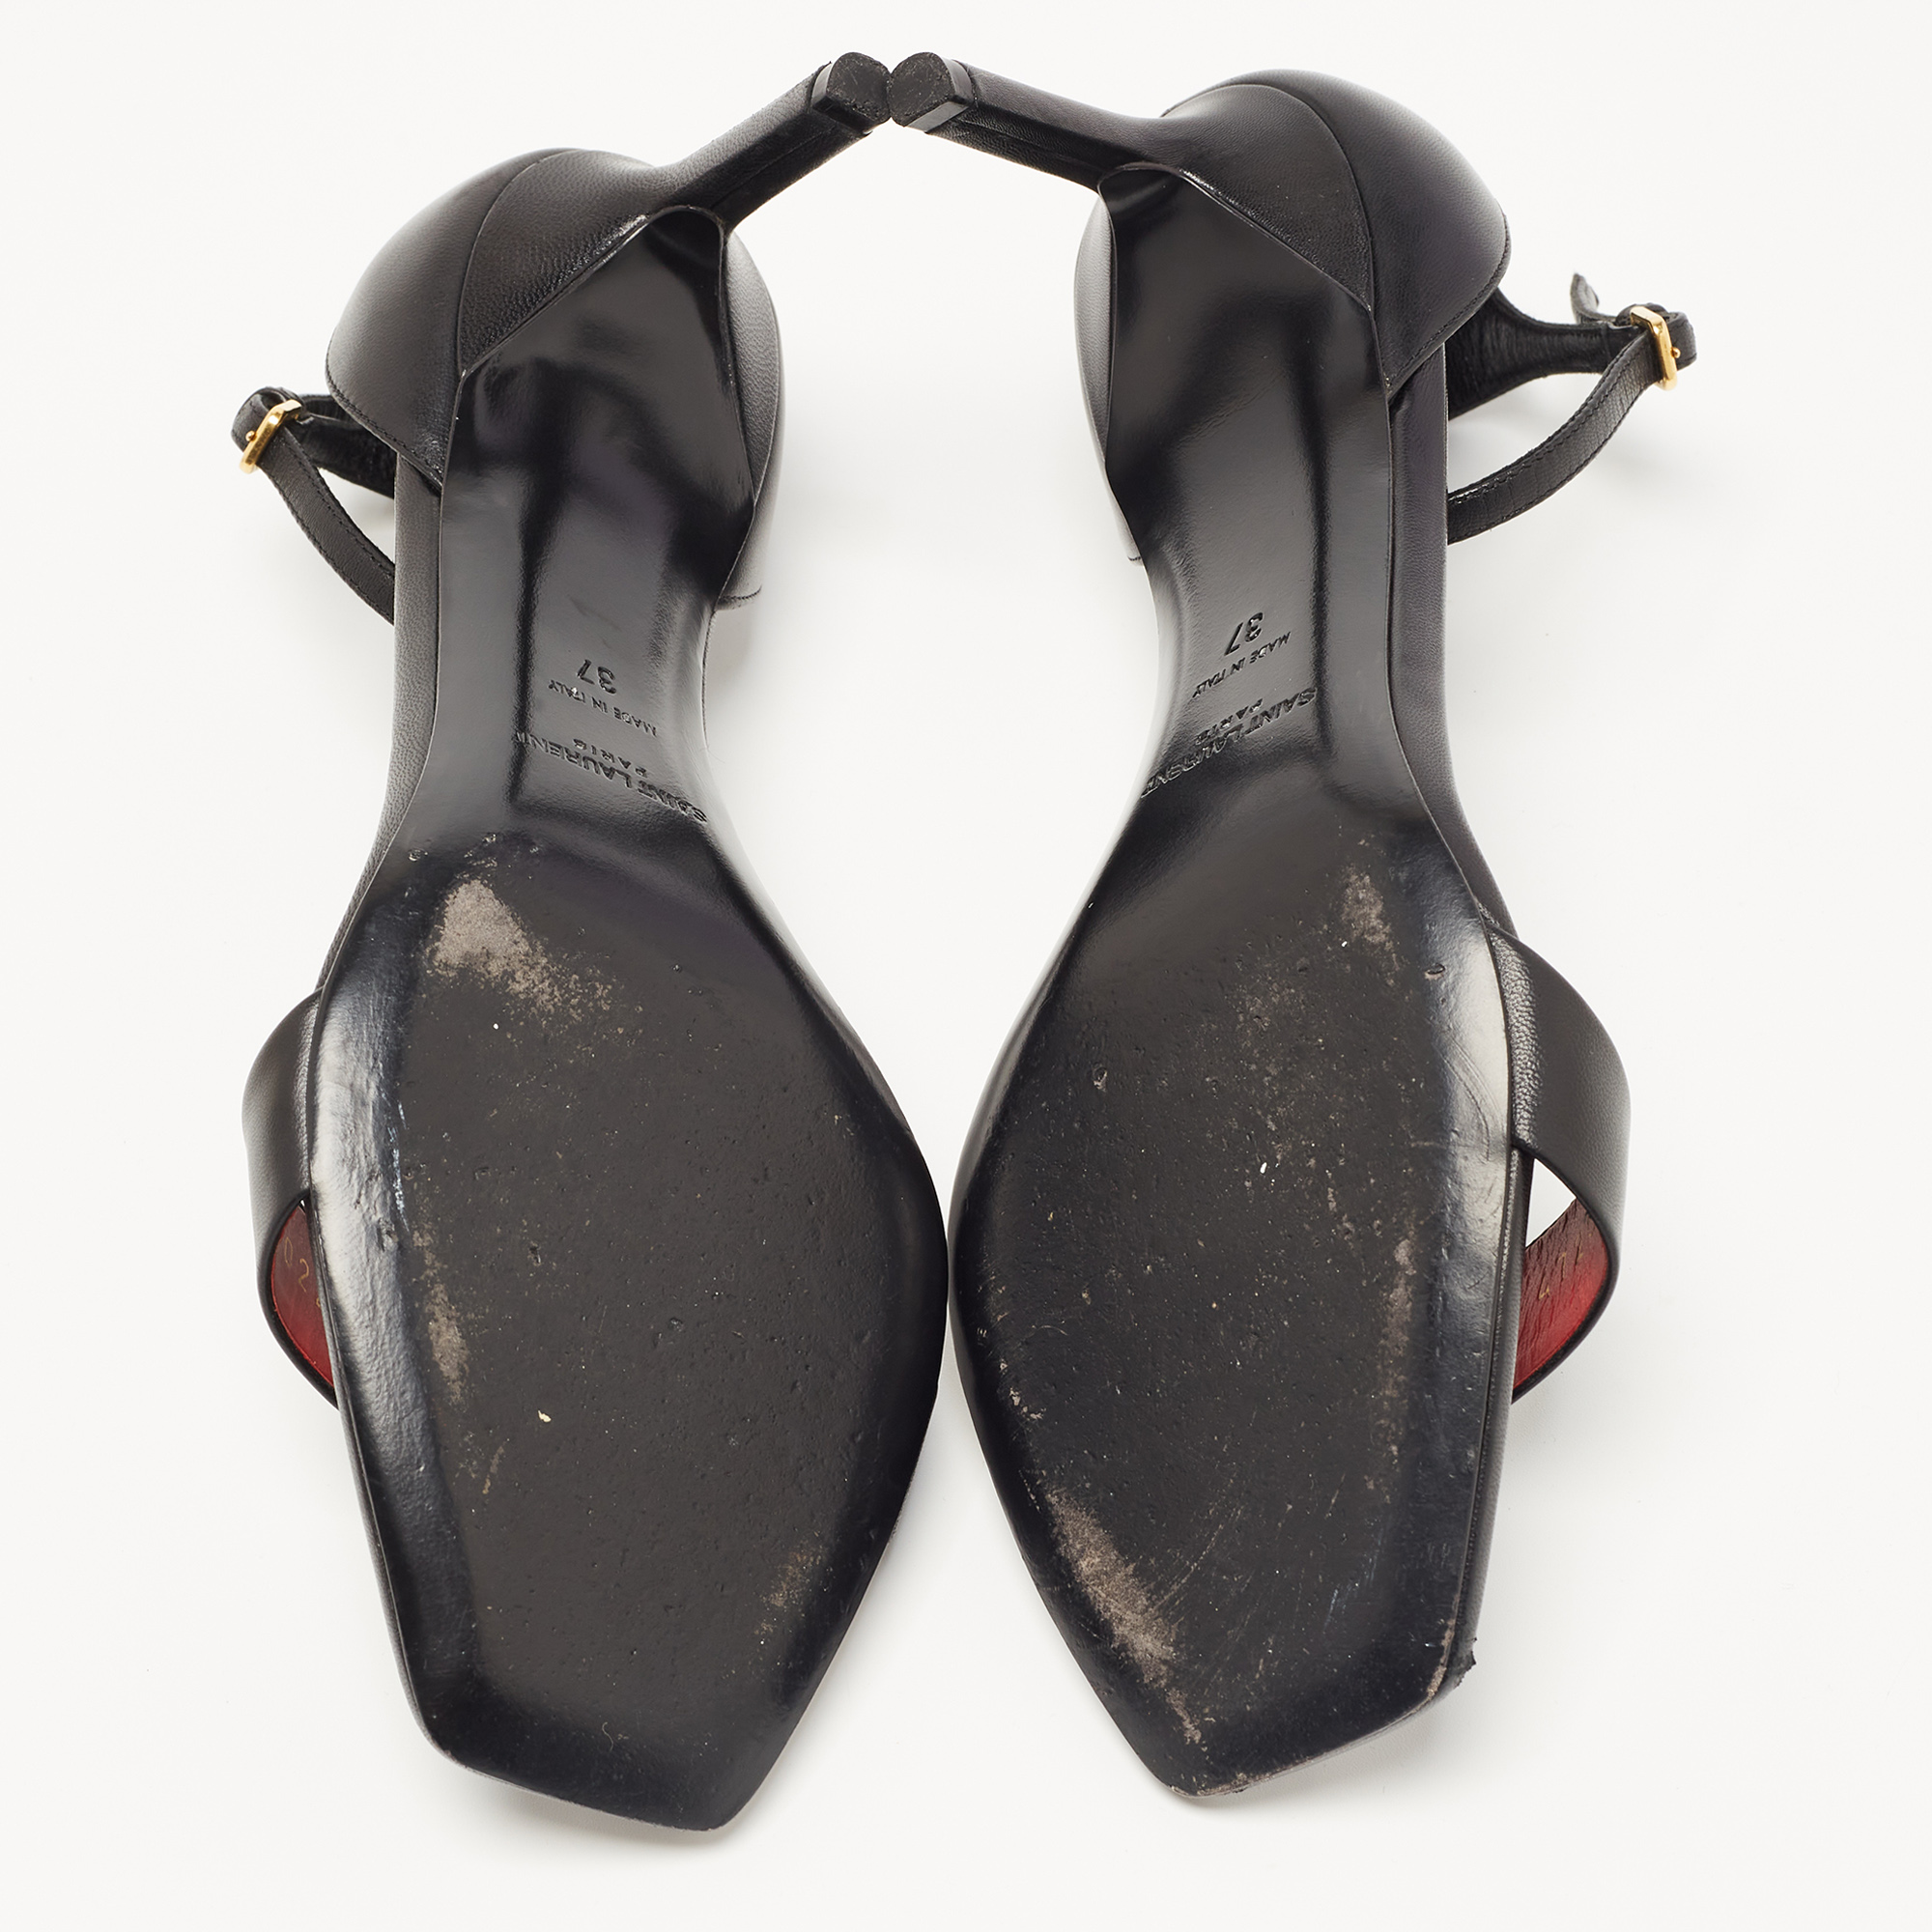 Saint Laurent Black Leather Jane Ankle Strap Sandals Size 37